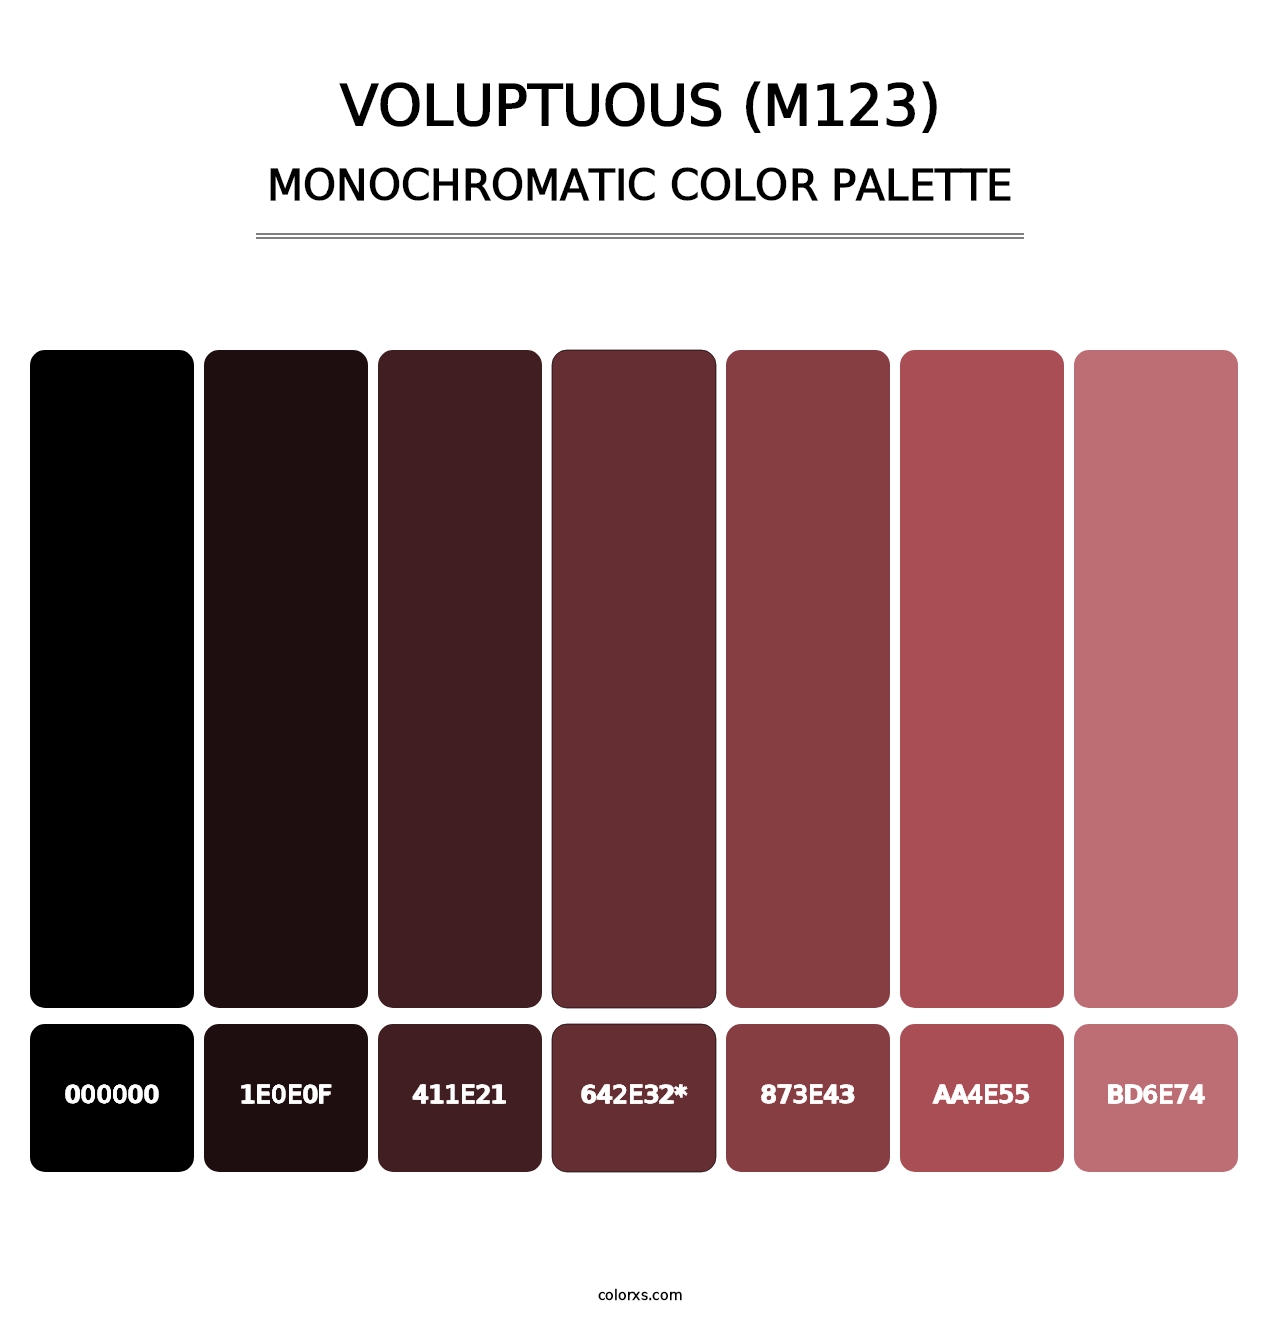 Voluptuous (M123) - Monochromatic Color Palette